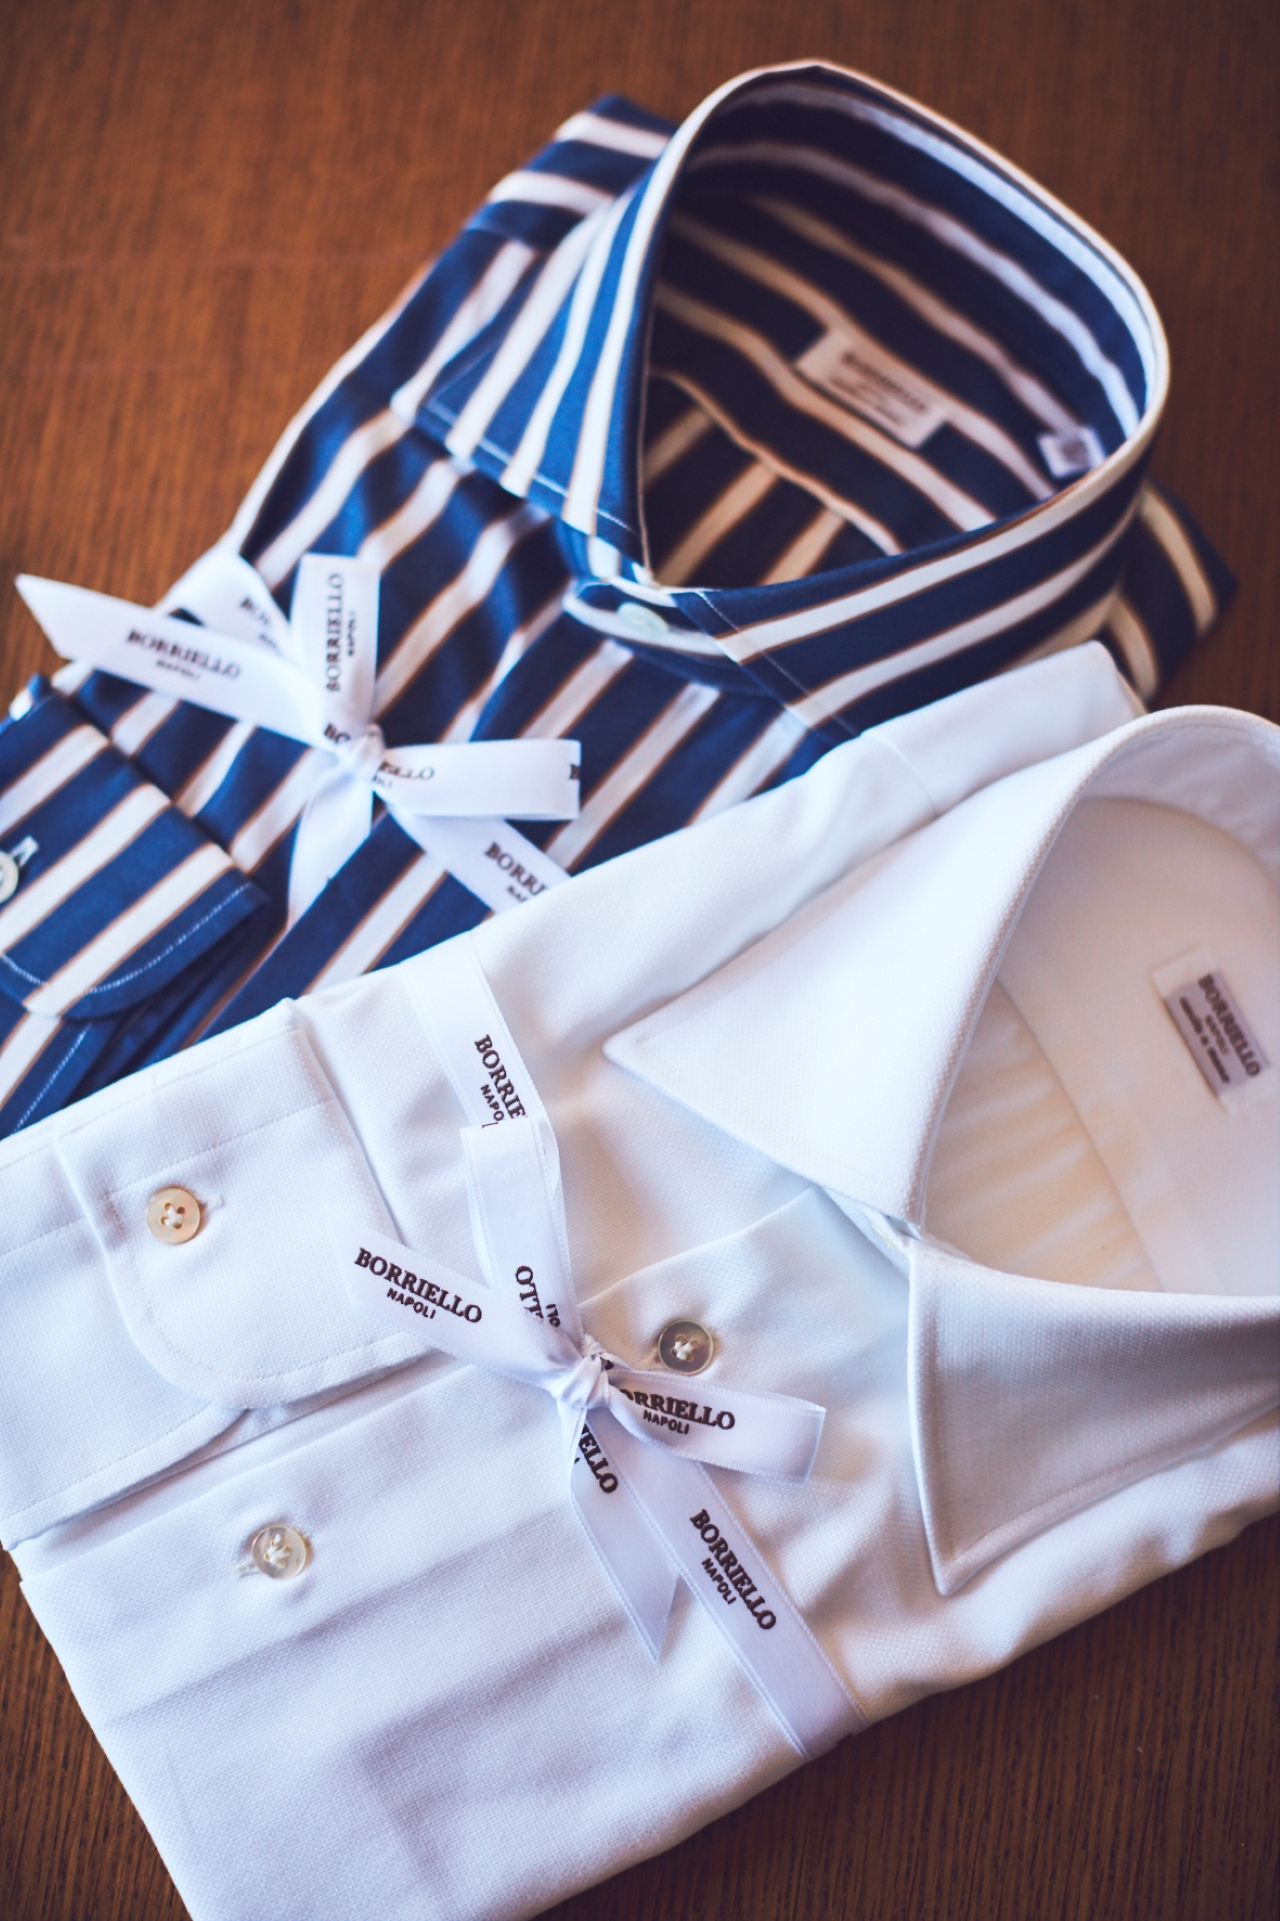 ボリエッロ（BORRIELLO）のオーダーシャツはお客様のお好みに合わせて、襟型や生地をお選びいただく事が出来ます。